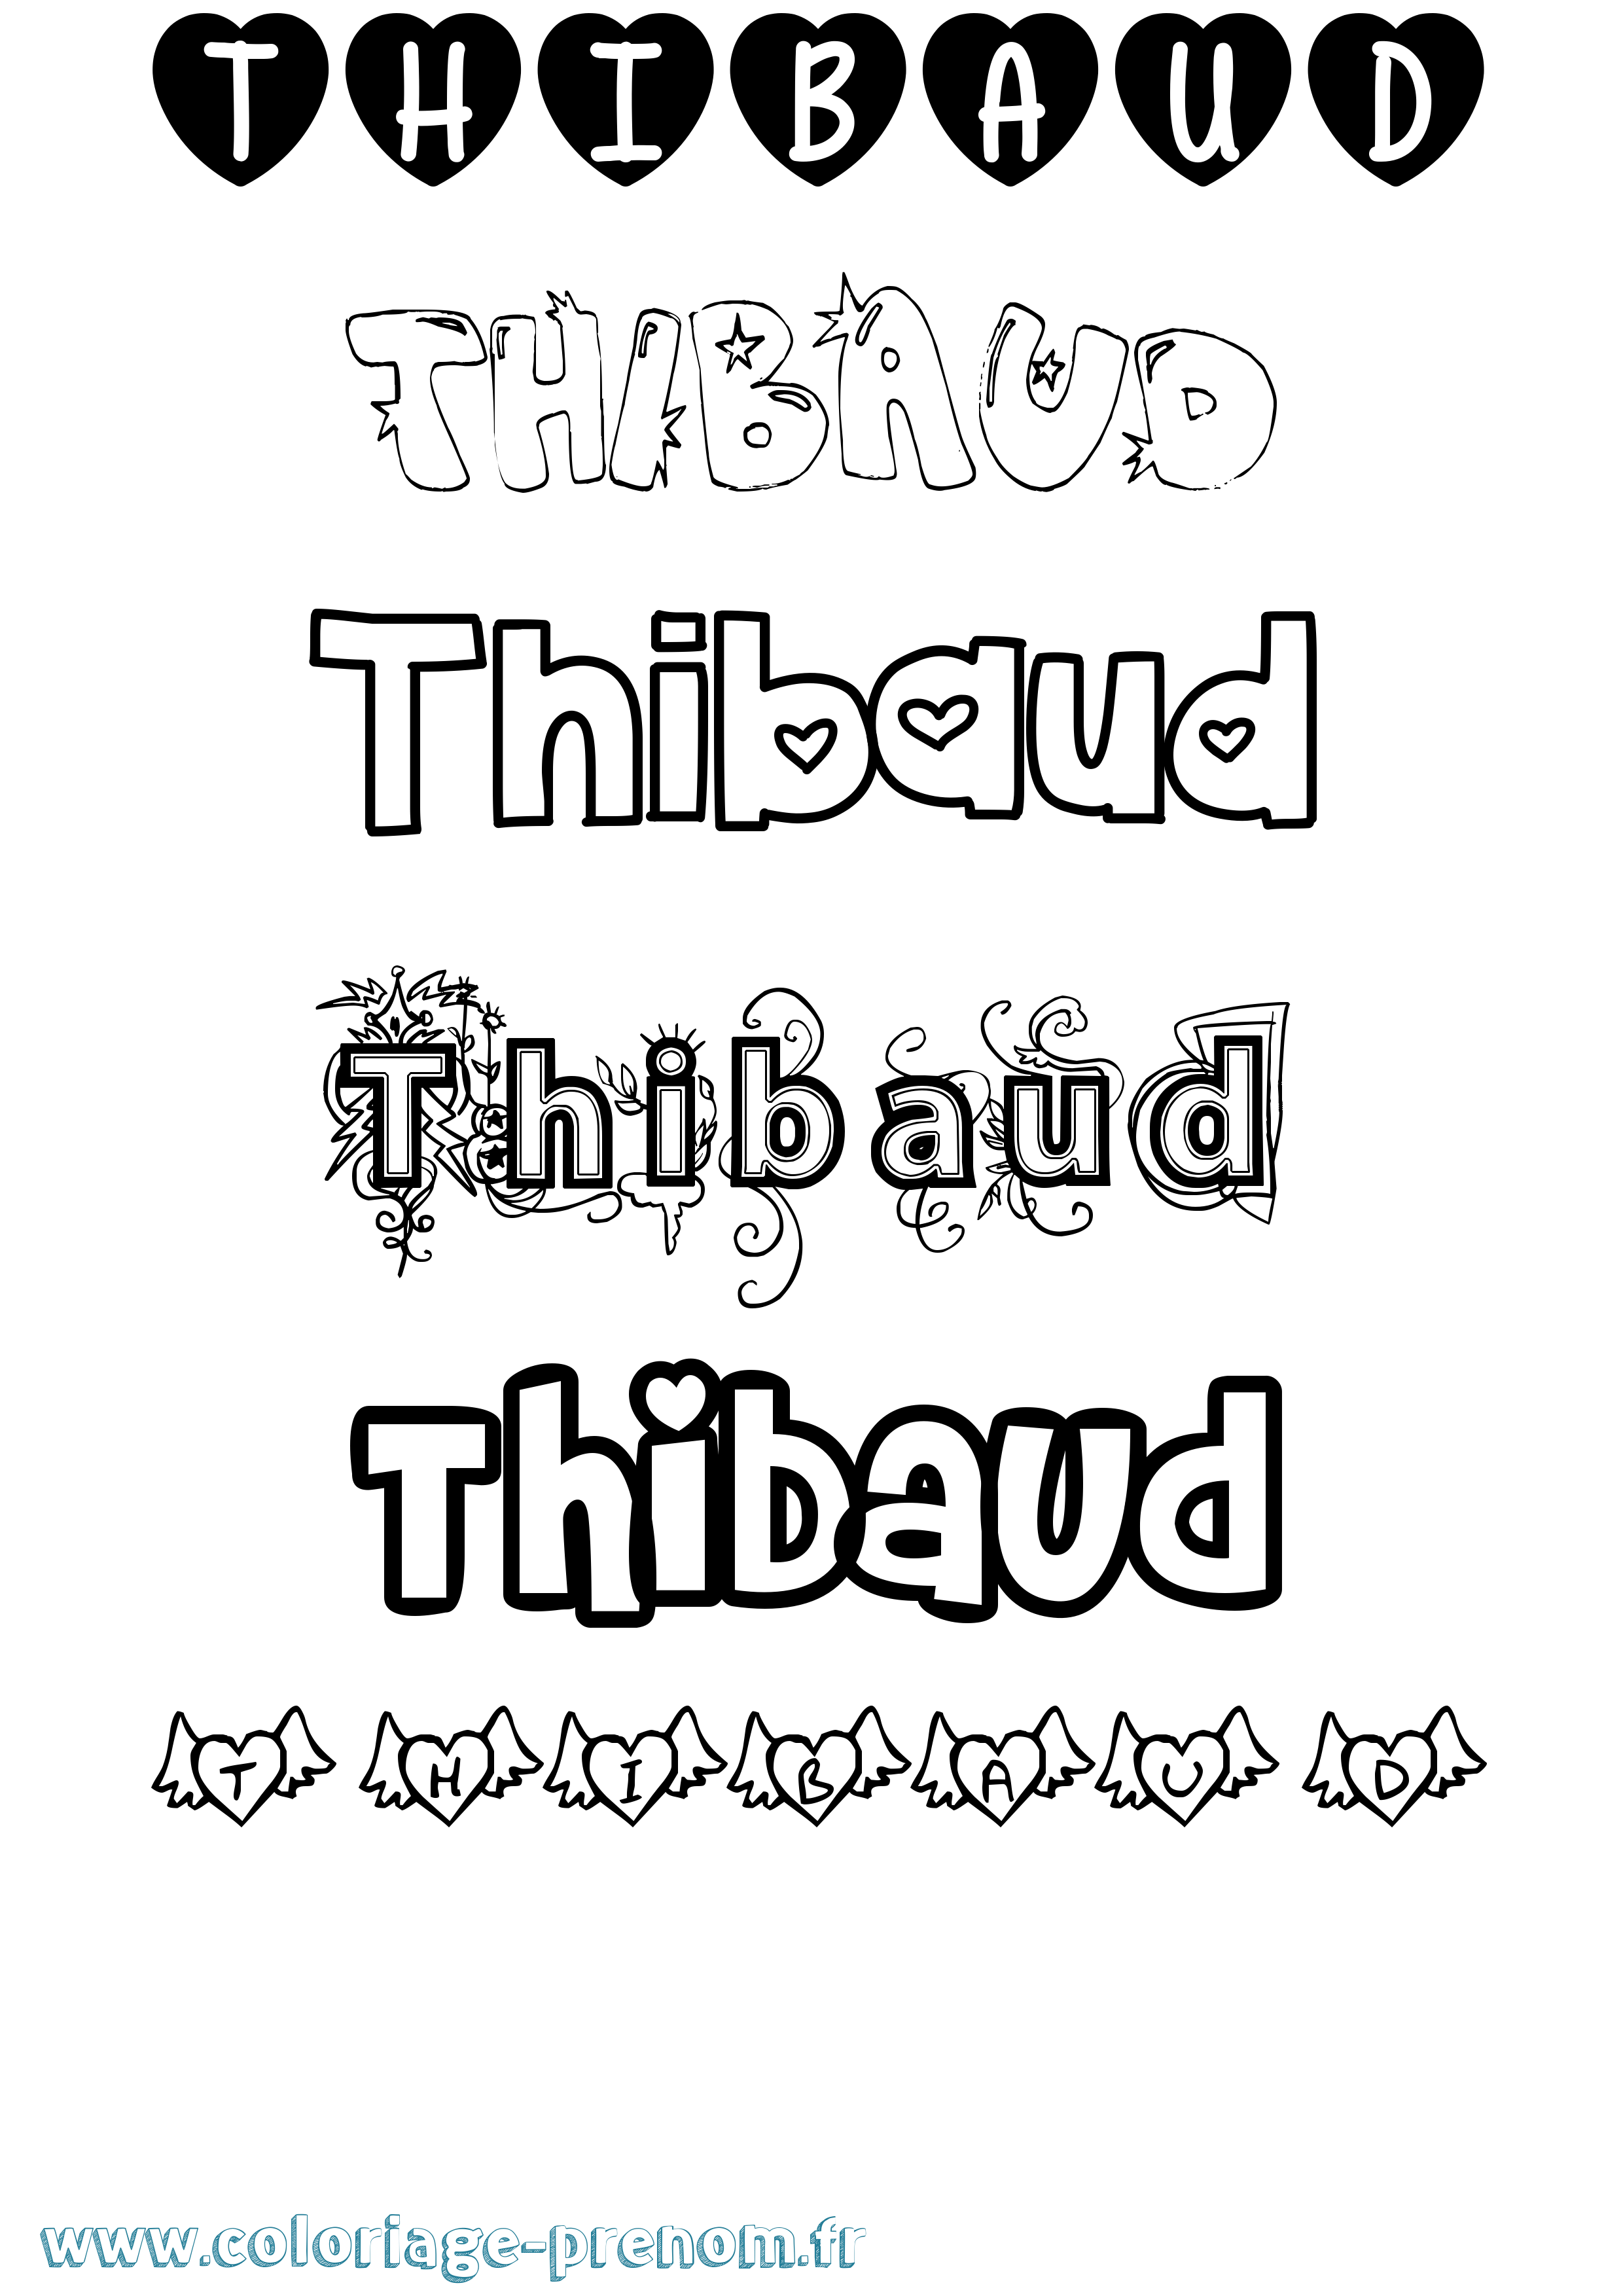 Coloriage prénom Thibaud